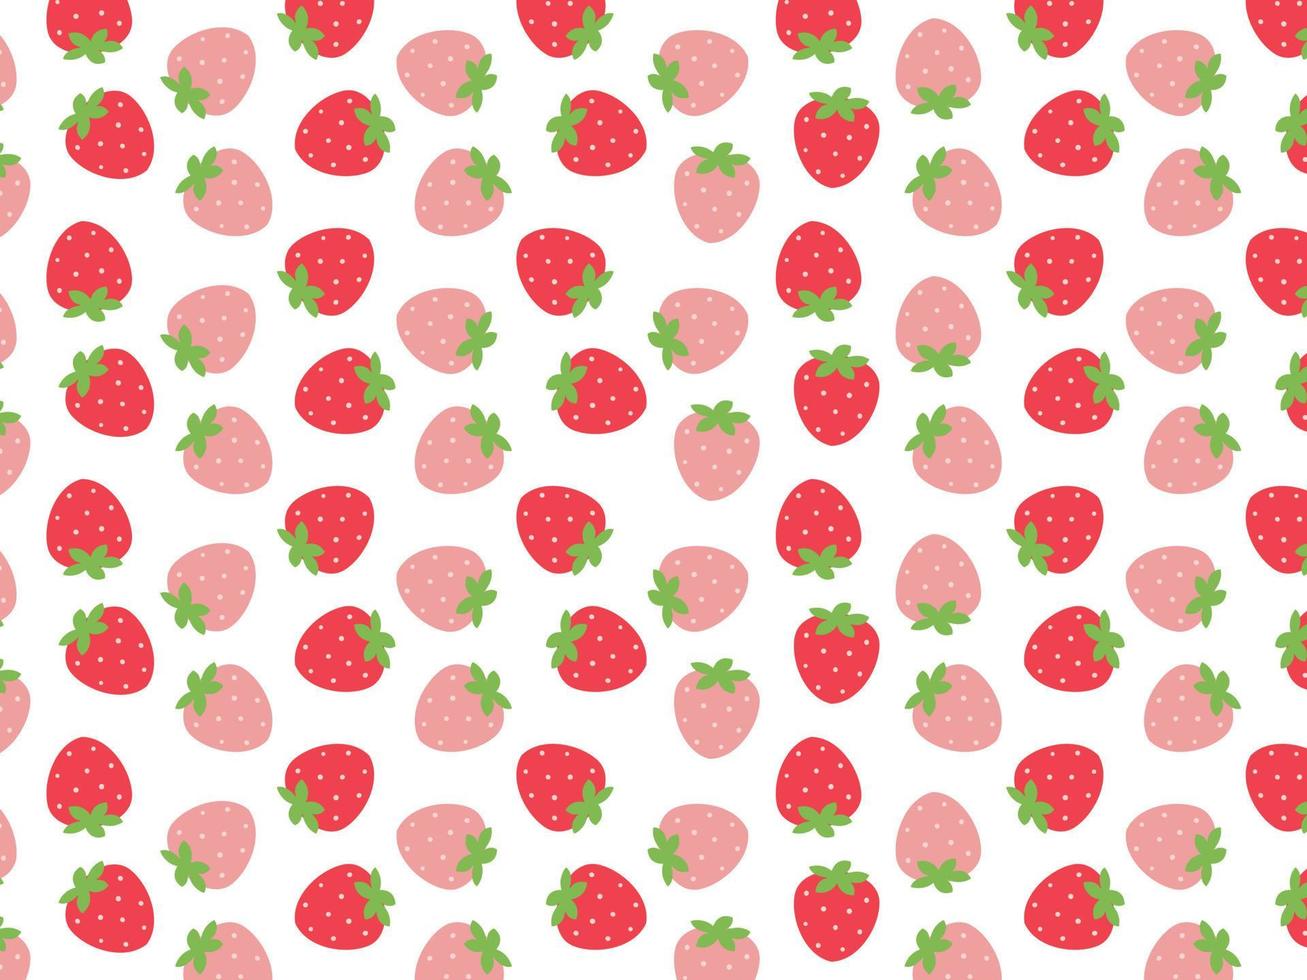 conception de vecteur de fond de fraise de fruits de modèle sans couture. peut être utilisé pour l'emballage, le papier d'emballage, les cartes de vœux, les autocollants, les tissus et les imprimés.